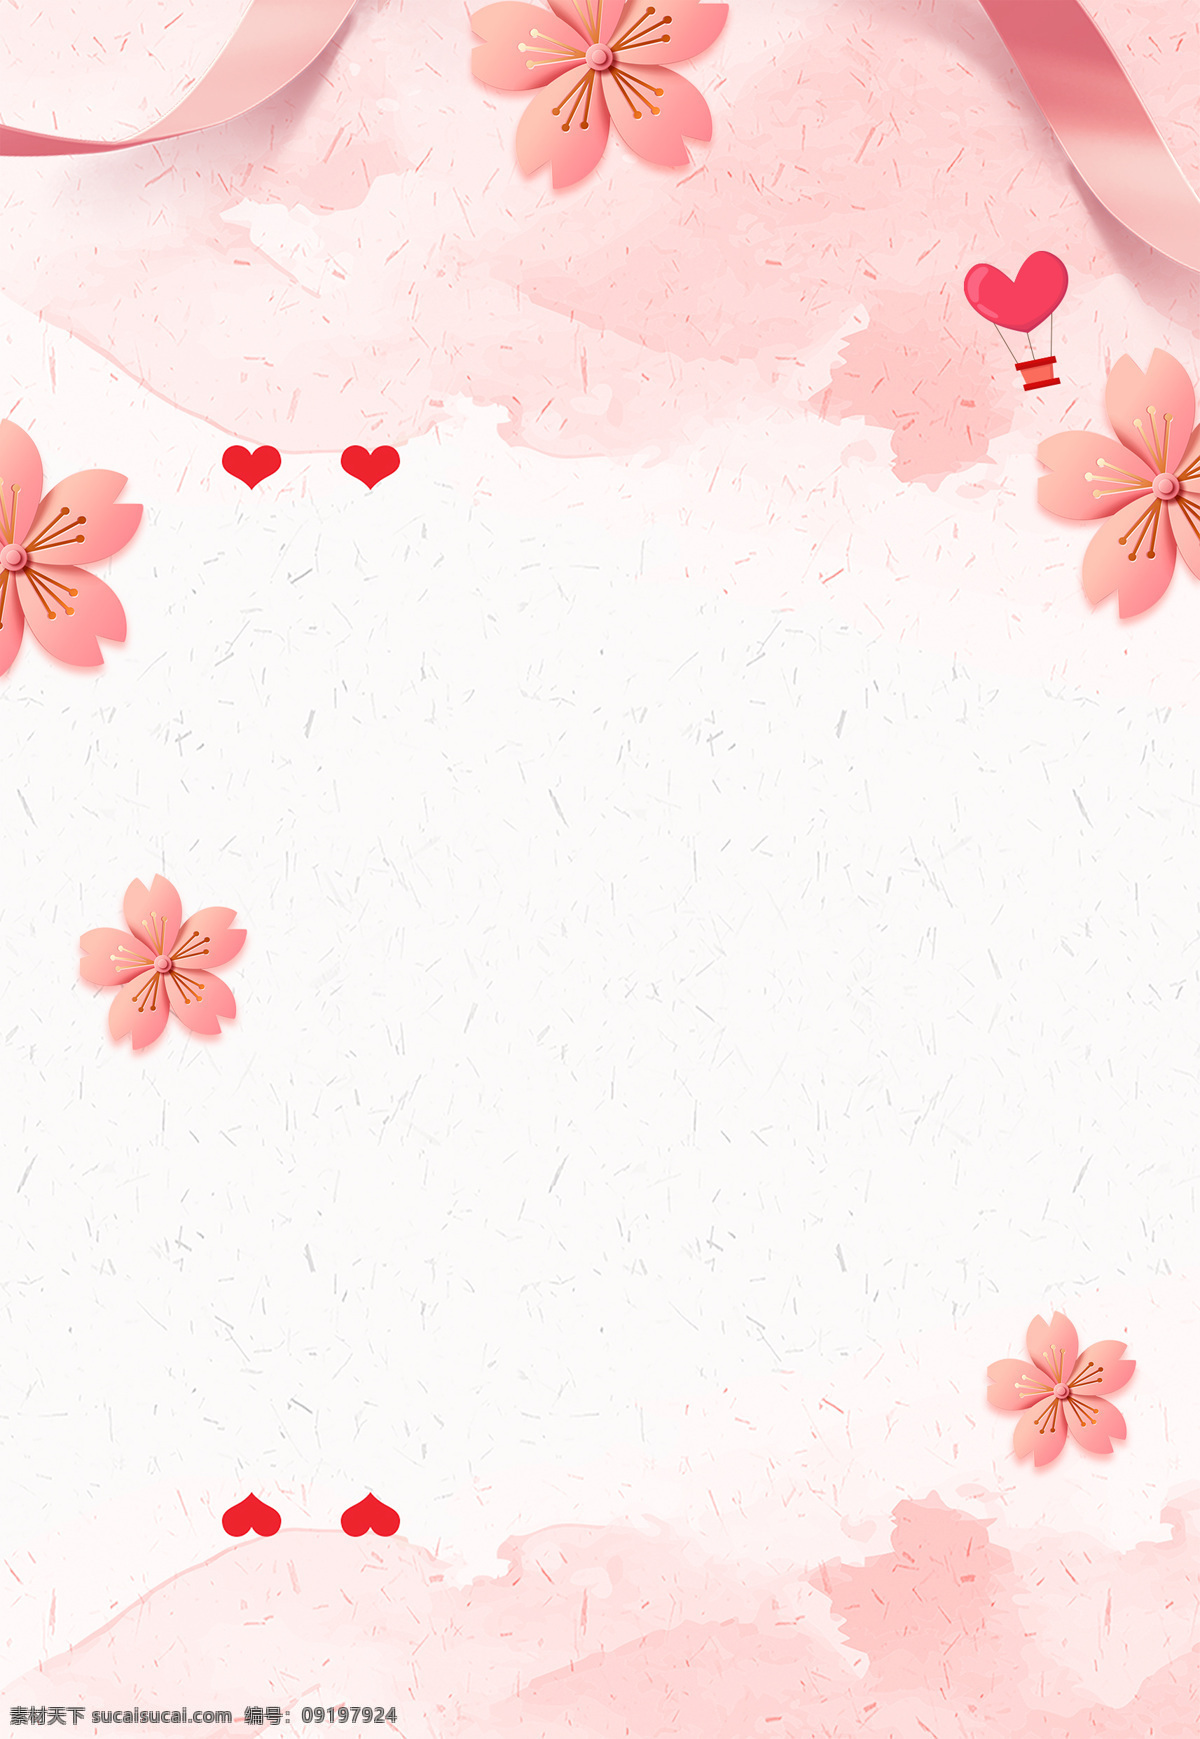 浪漫 粉色 花朵 背景 丝带 爱心 心形 水彩 手绘 淡雅 水墨